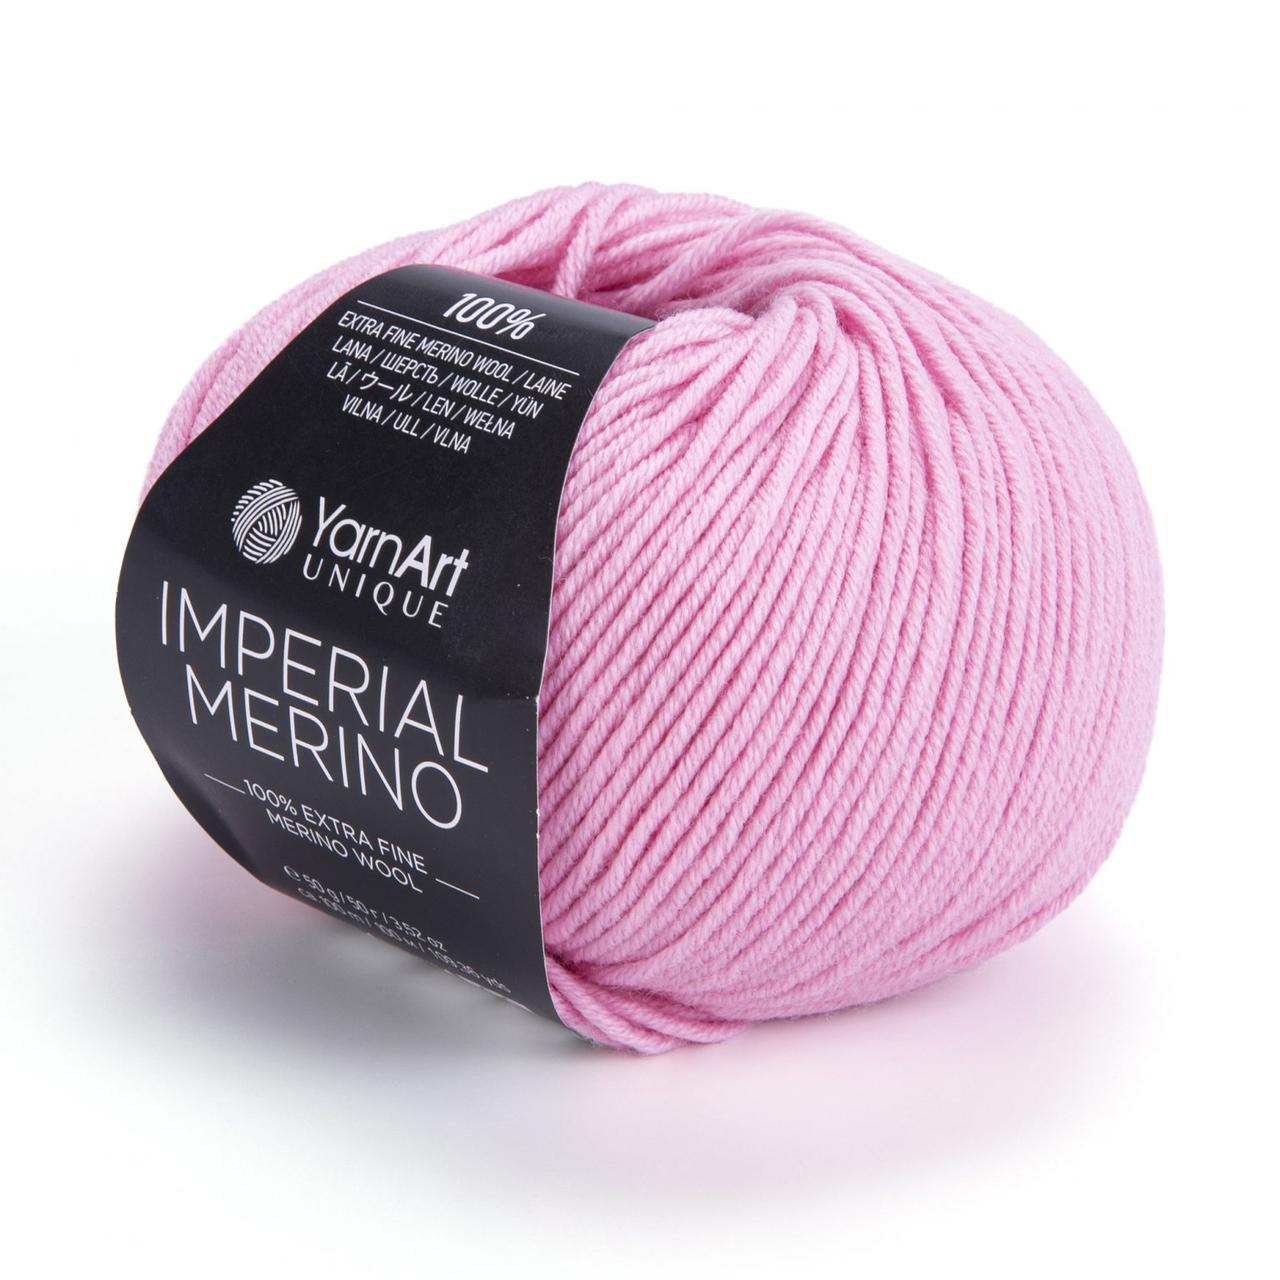 YarnArt Imperial Merino (пряжа Імперіал Меріно) 3326 рожевий